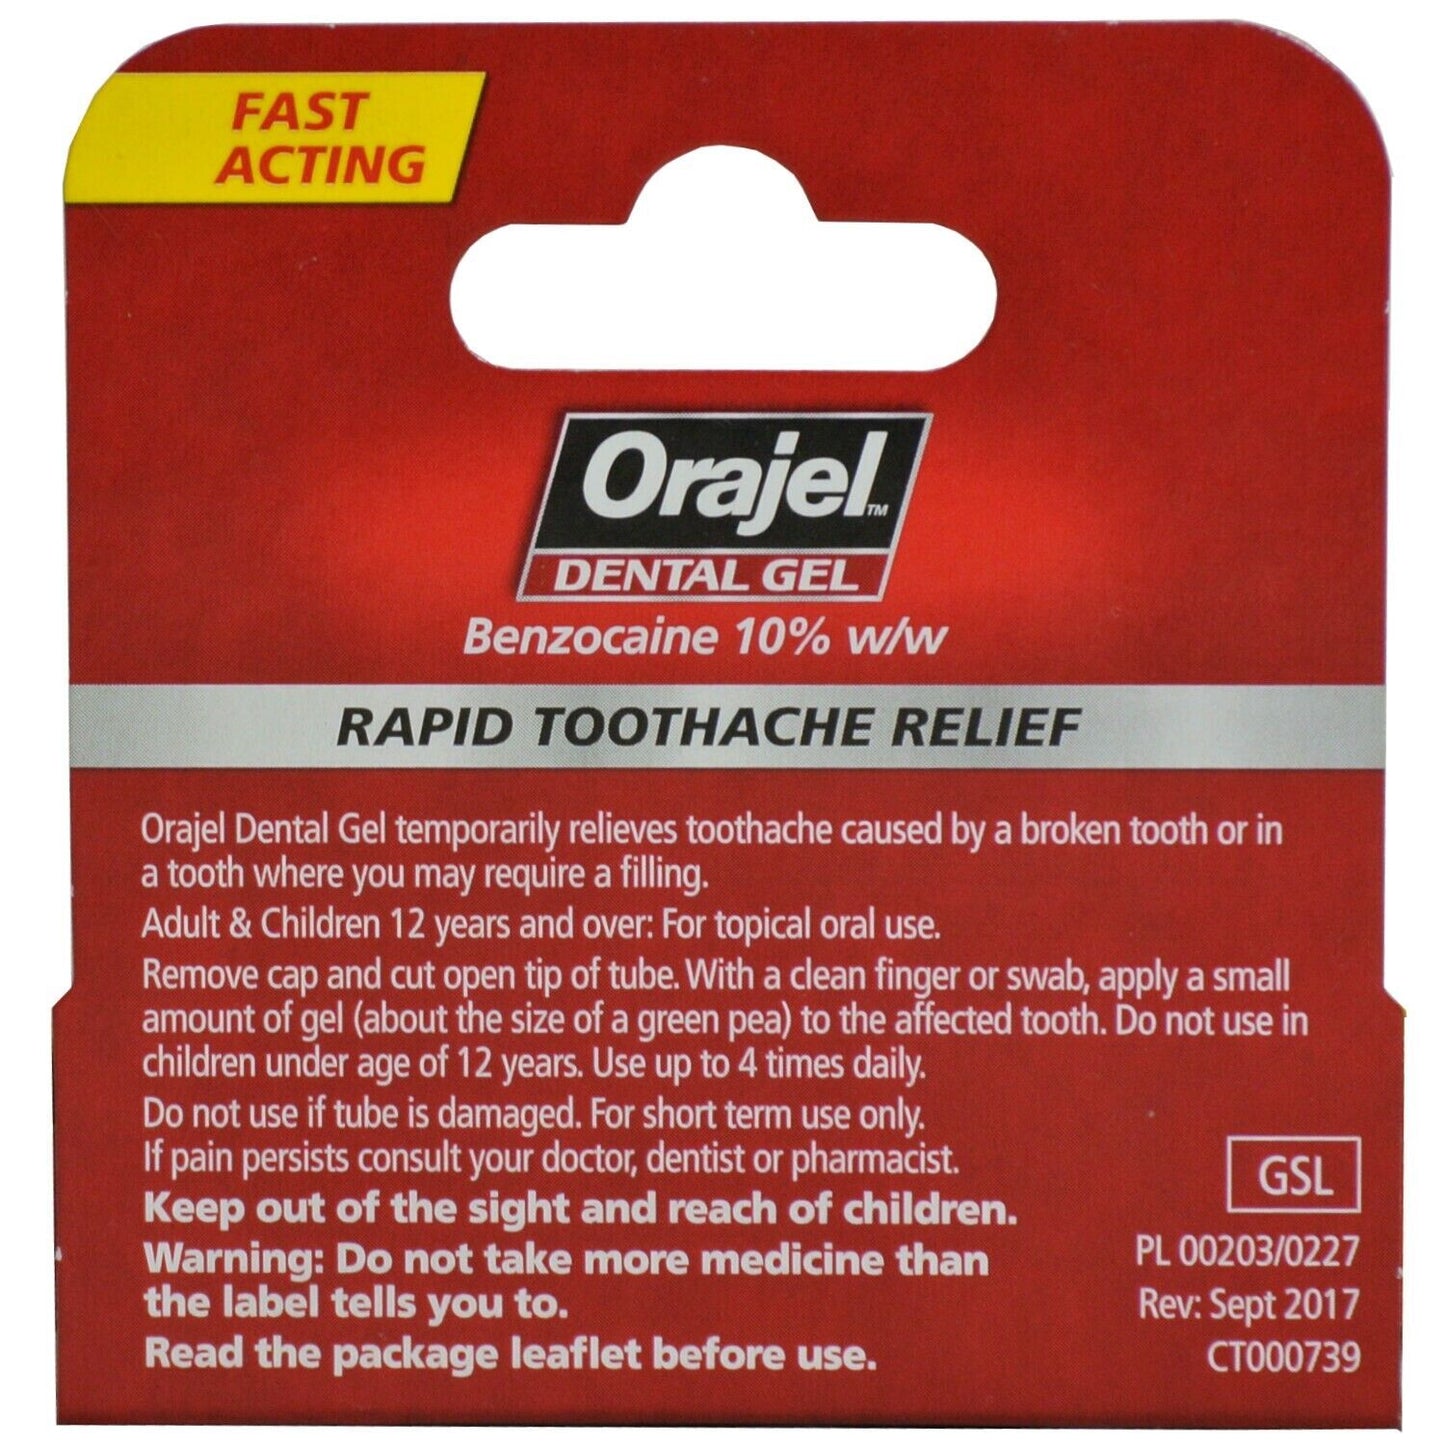 Orajel Dental Gel Rapid Toothache Relief Benzocaine 10% w/w